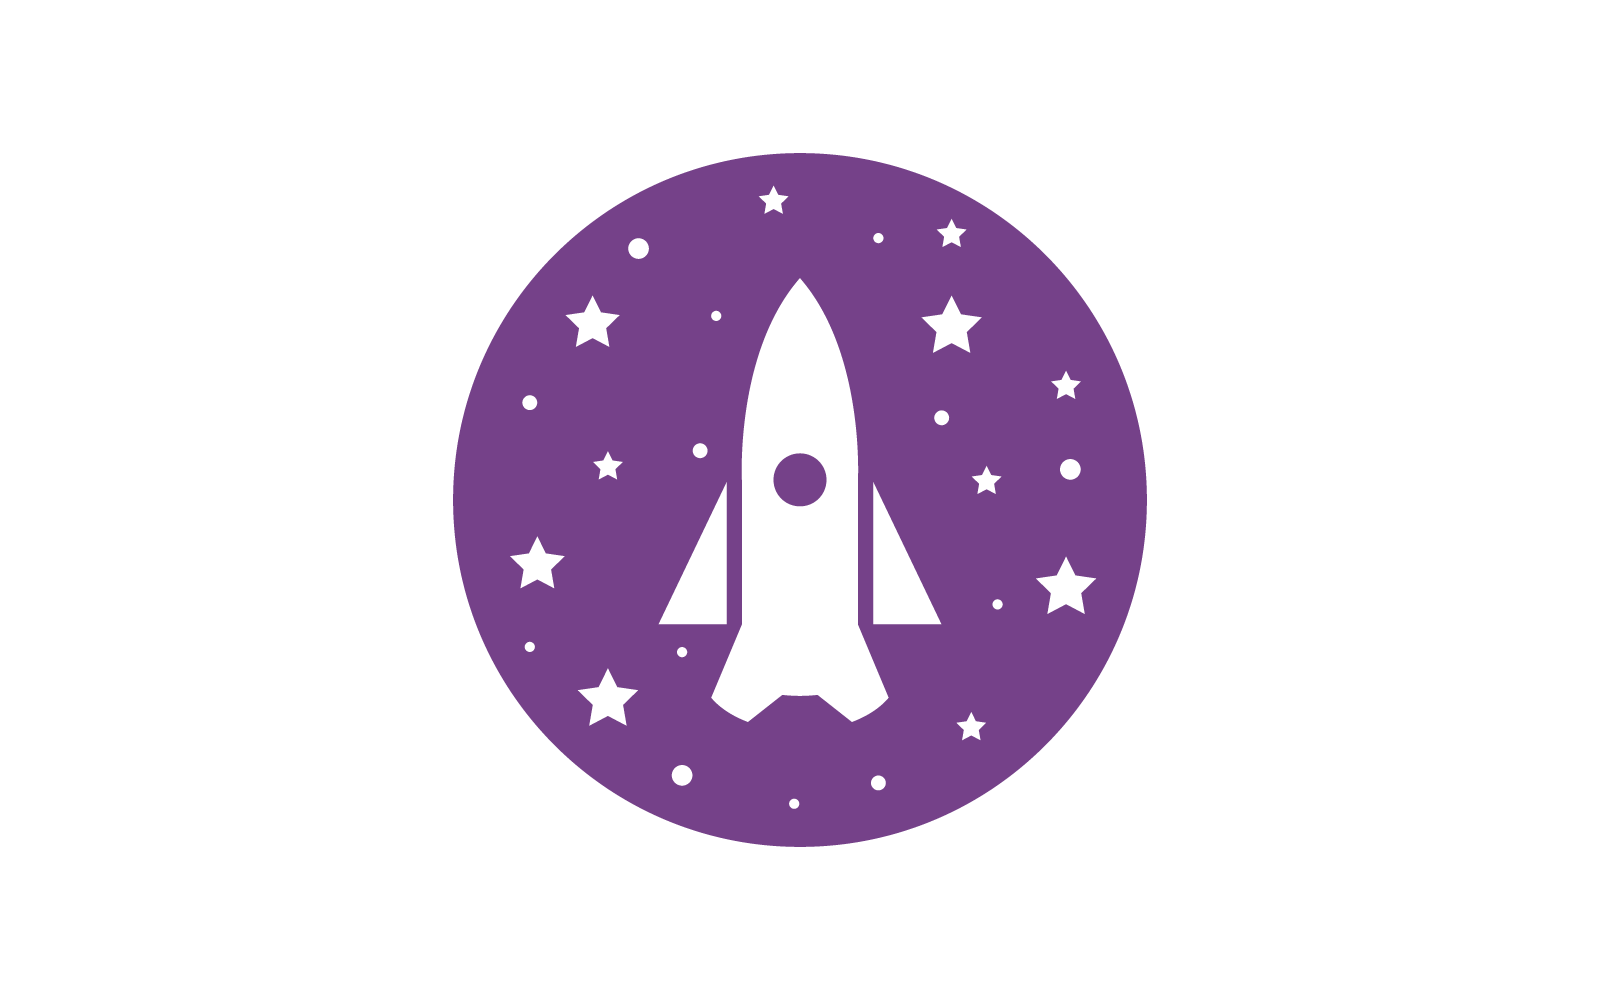 Rocket ilustration logo design template